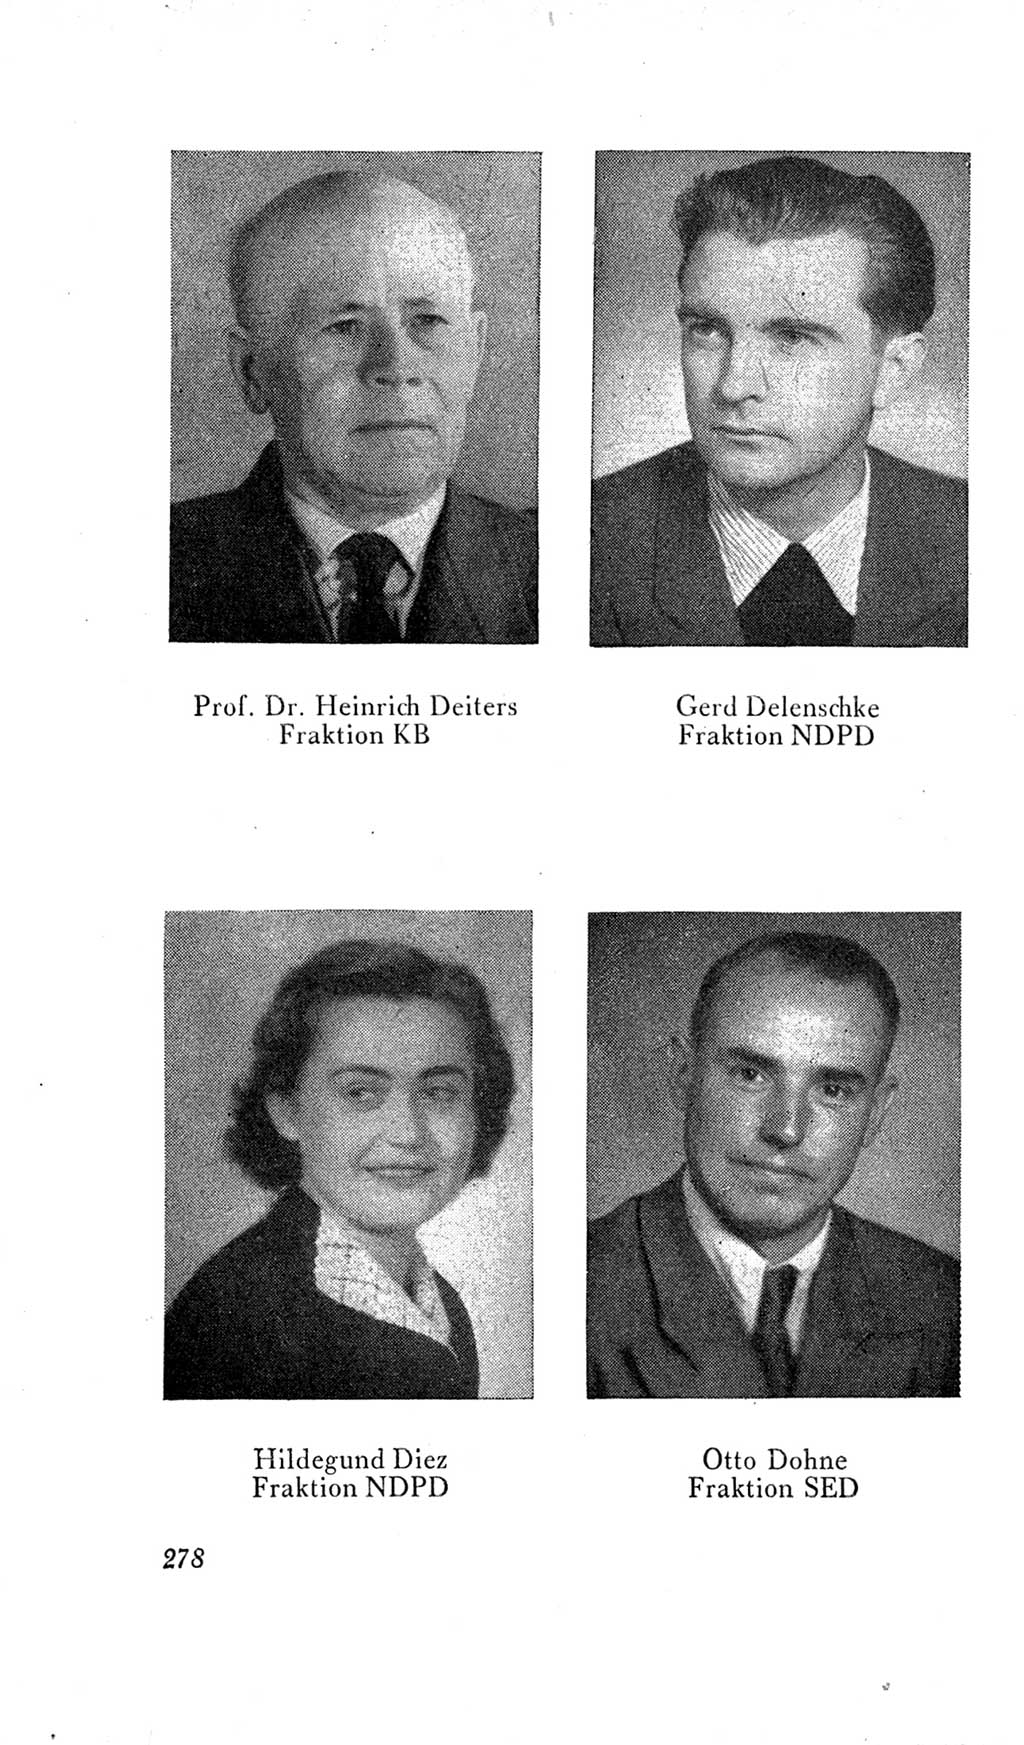 Handbuch der Volkskammer (VK) der Deutschen Demokratischen Republik (DDR), 2. Wahlperiode 1954-1958, Seite 278 (Hdb. VK. DDR, 2. WP. 1954-1958, S. 278)